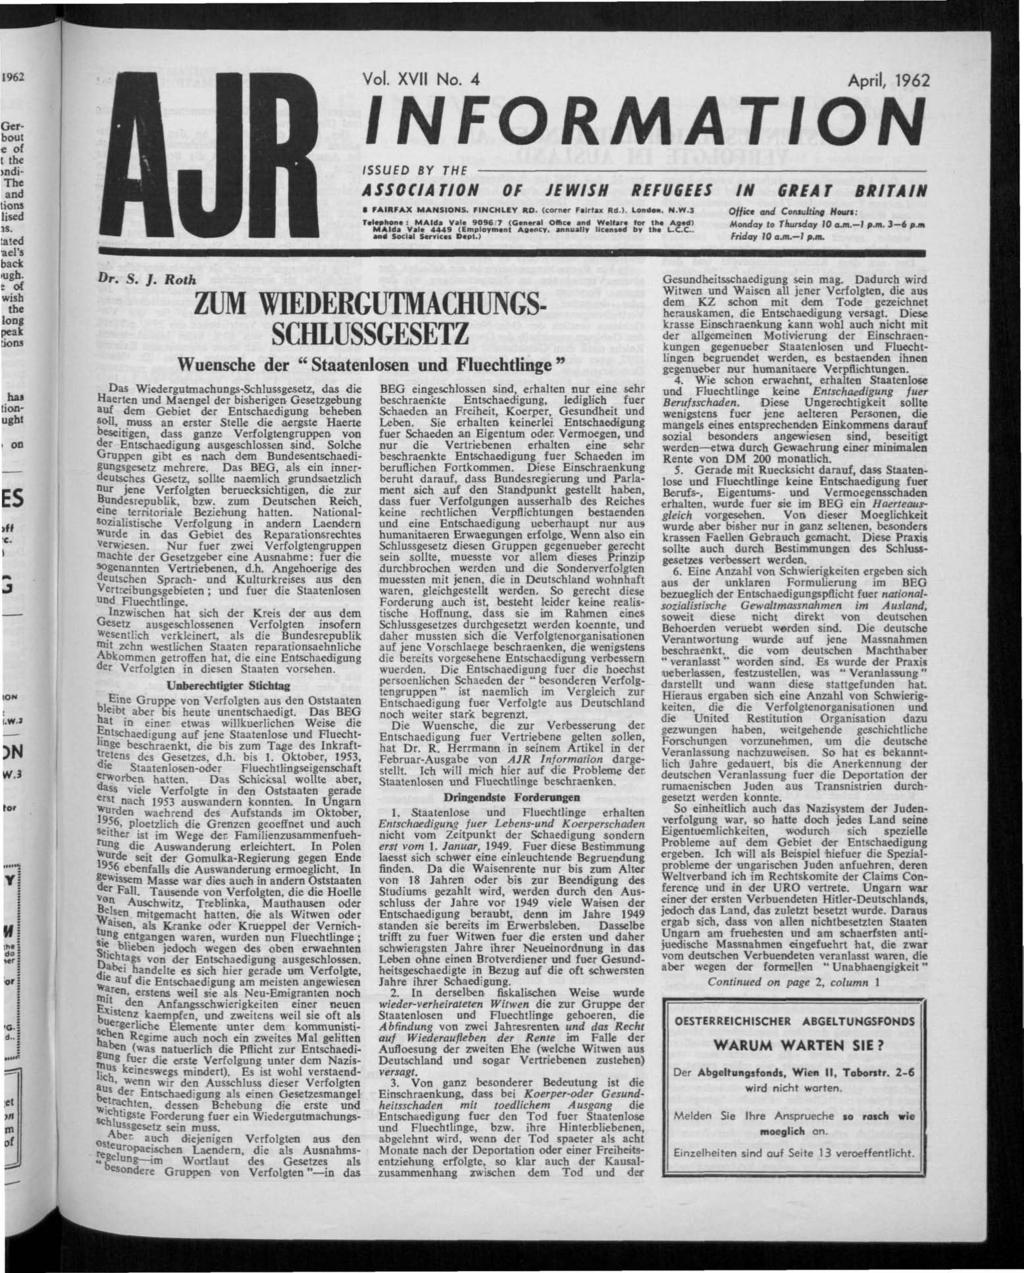 INFORMATION. Vol. XVII No. April, 1962 OP JEWISH GREAT BRITAIN. Wuensche der " Staatenlosen und Fluechtlinge ** - PDF Kostenfreier Download